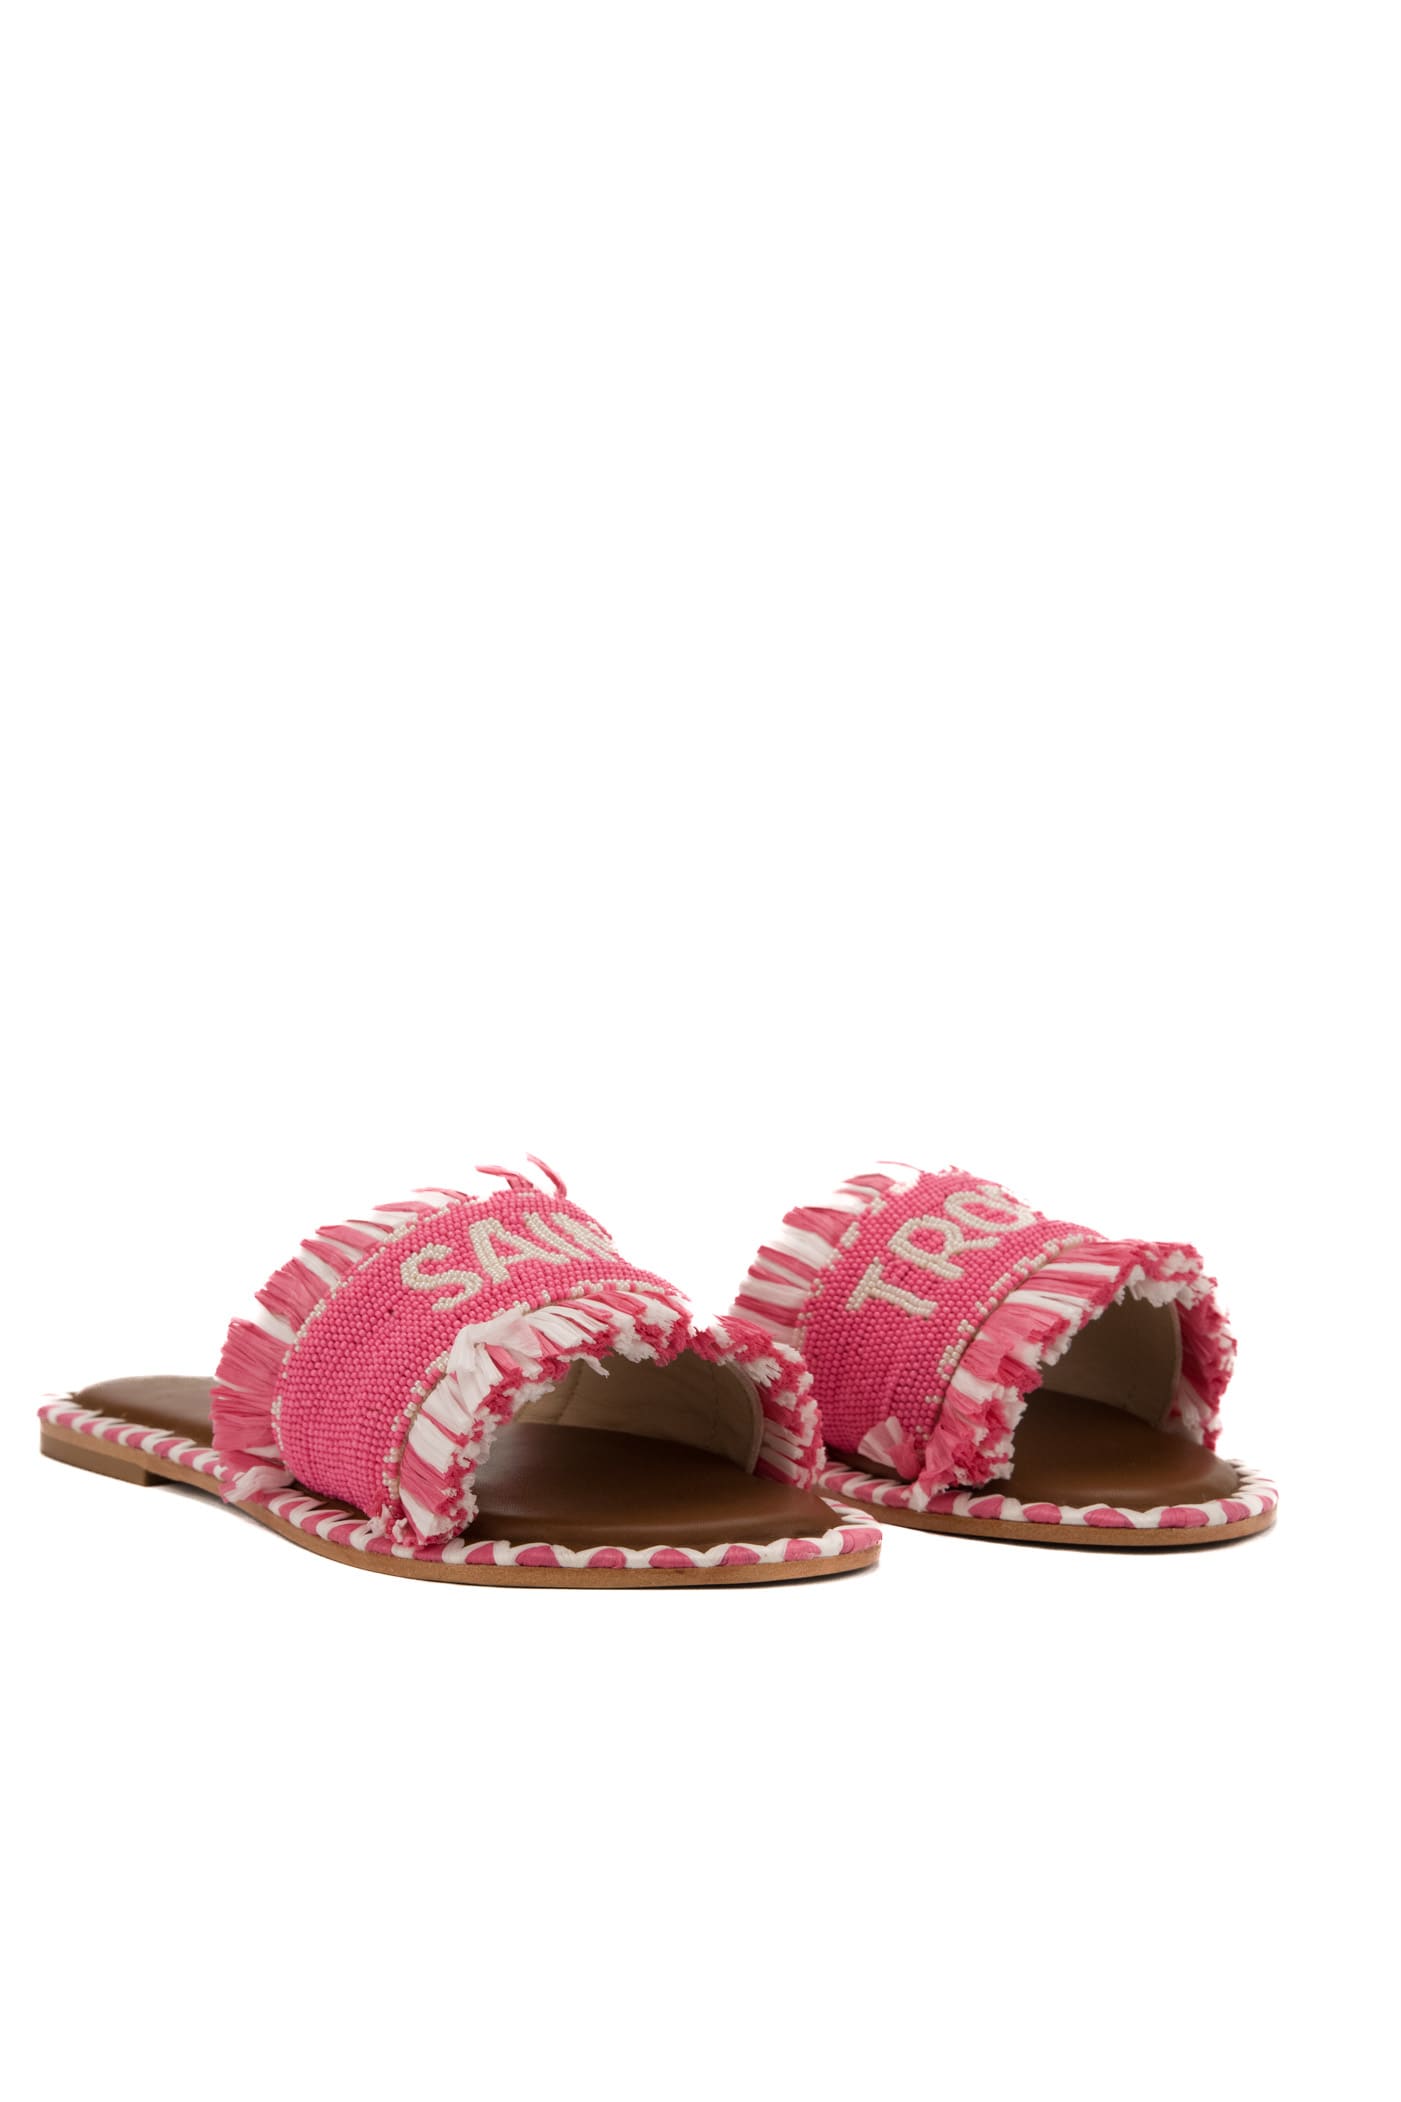 Shop De Siena Saint Tropez Pink Sandals